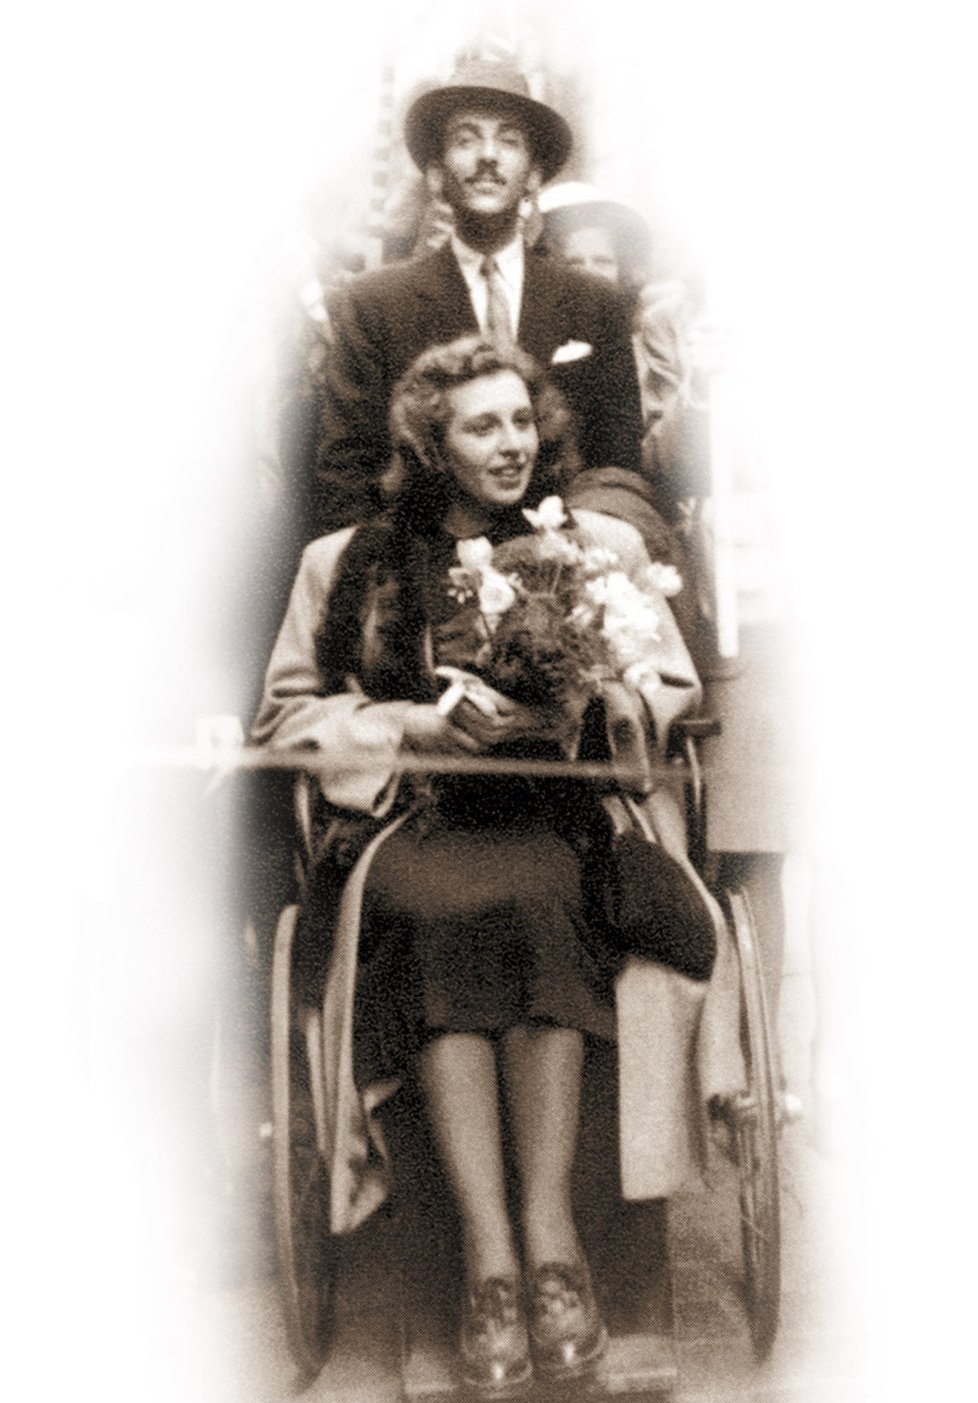 Bláznivá svatba Zázvorkové a Kopeckého se částečně odehrála na vozíku ve stylu Švejka.